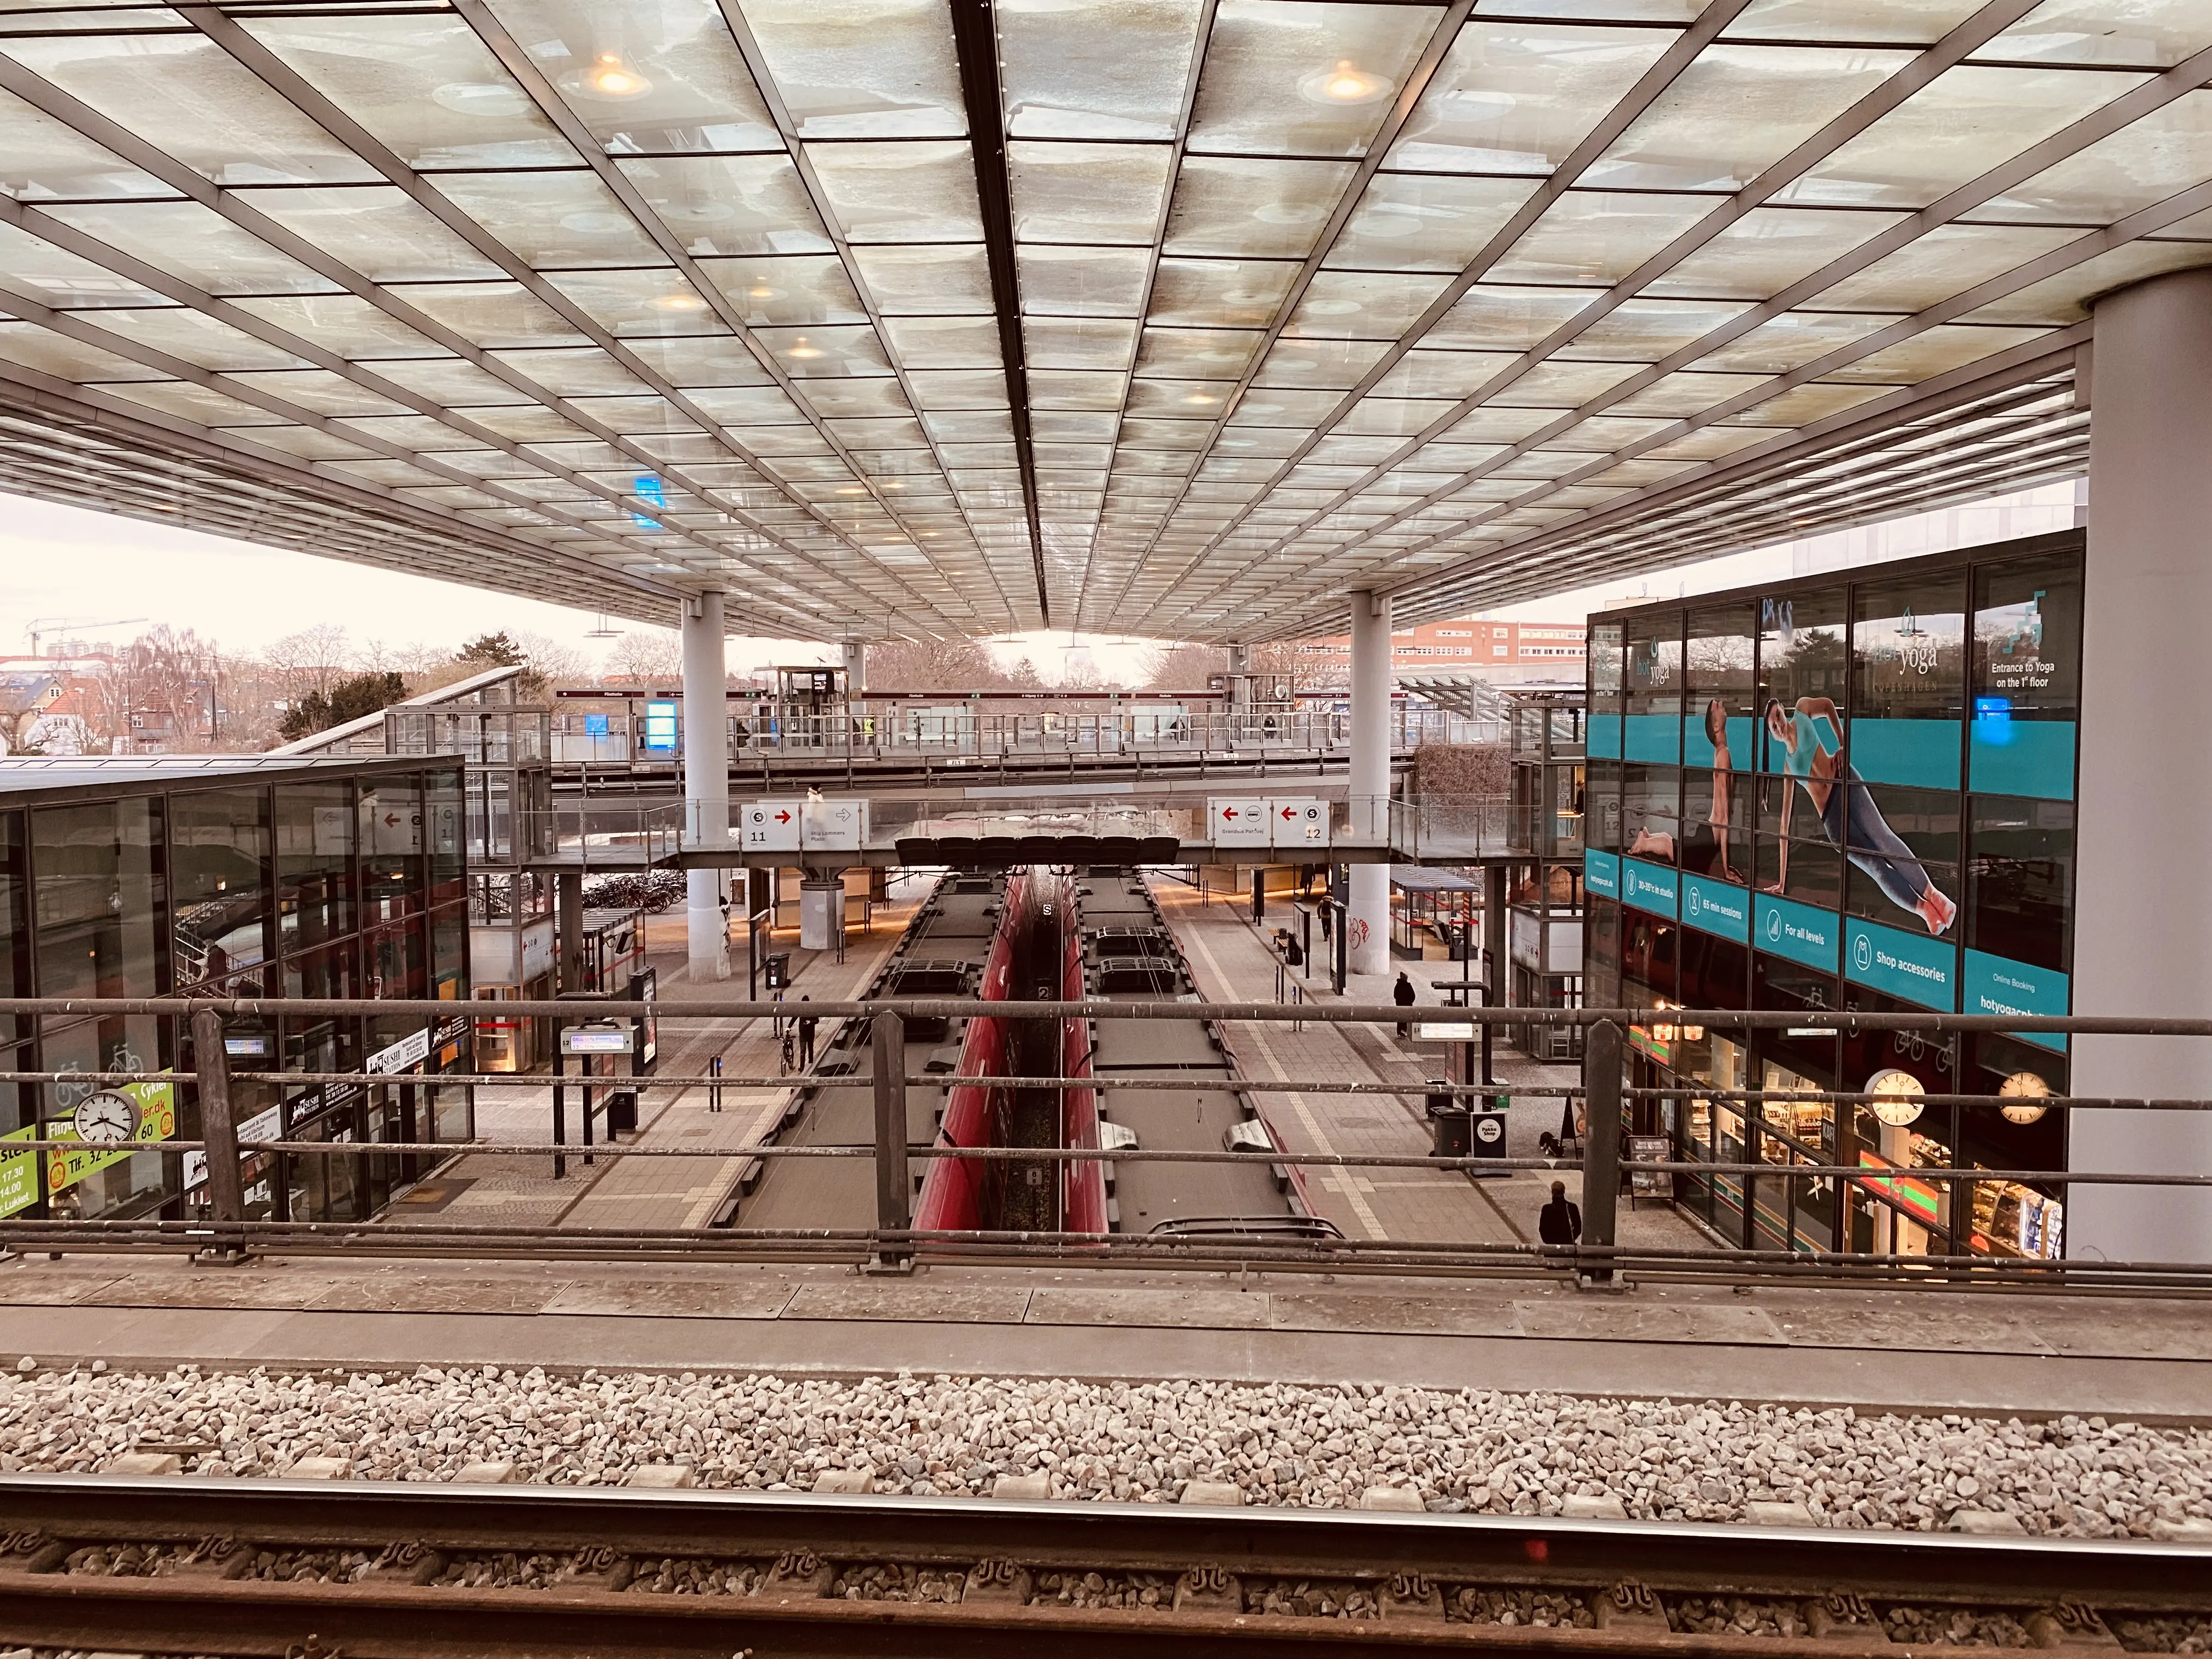 Billede af Flintholm Station.